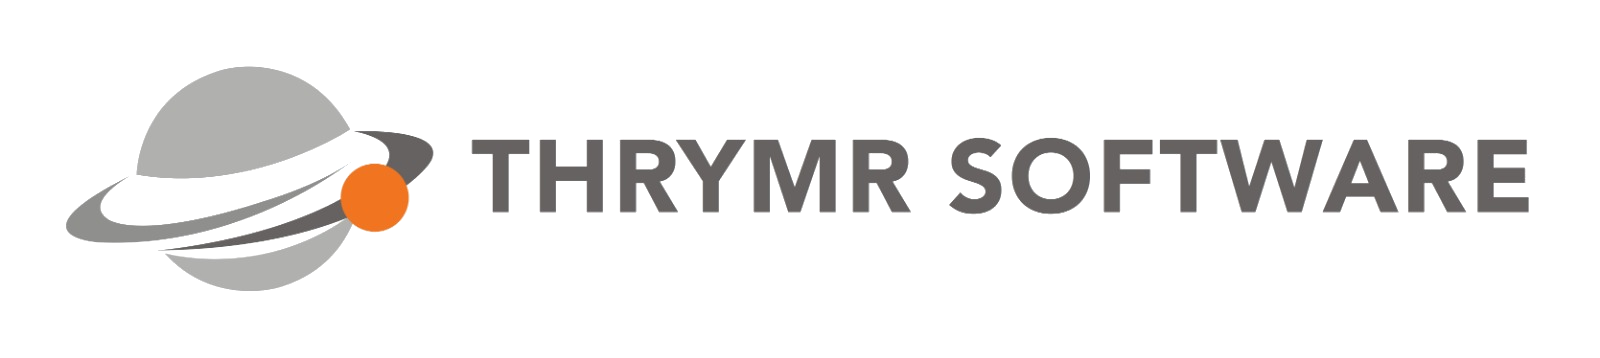 Thrymr logo